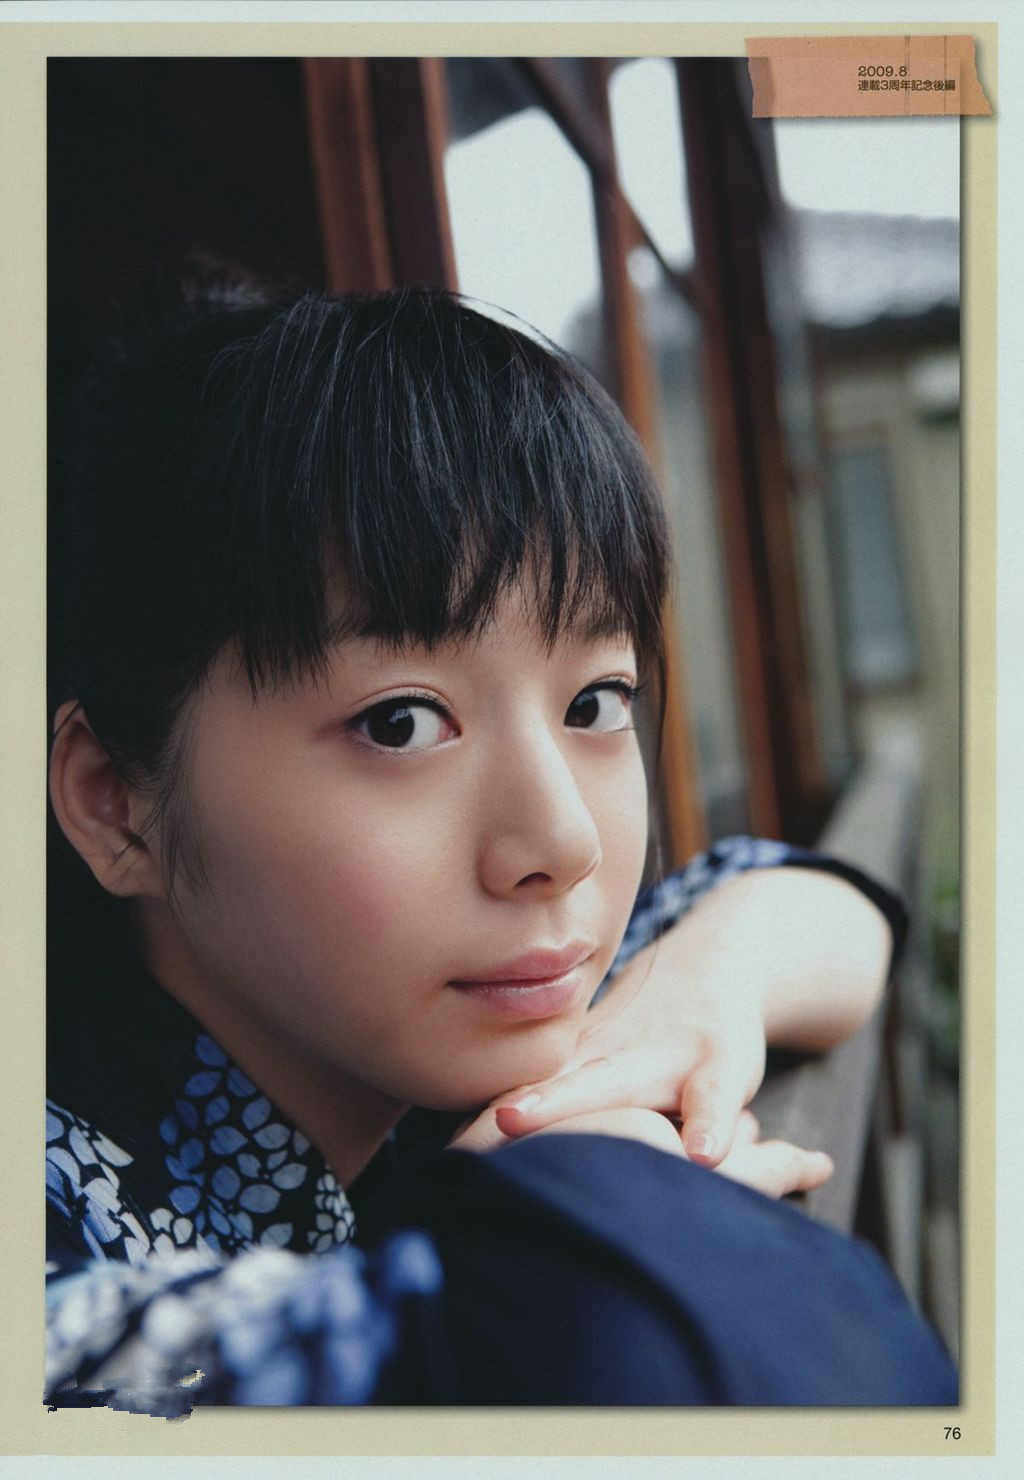 夏帆,1991年6月30日出生于东京,日本女演员,模特, 隶属于stardust pro